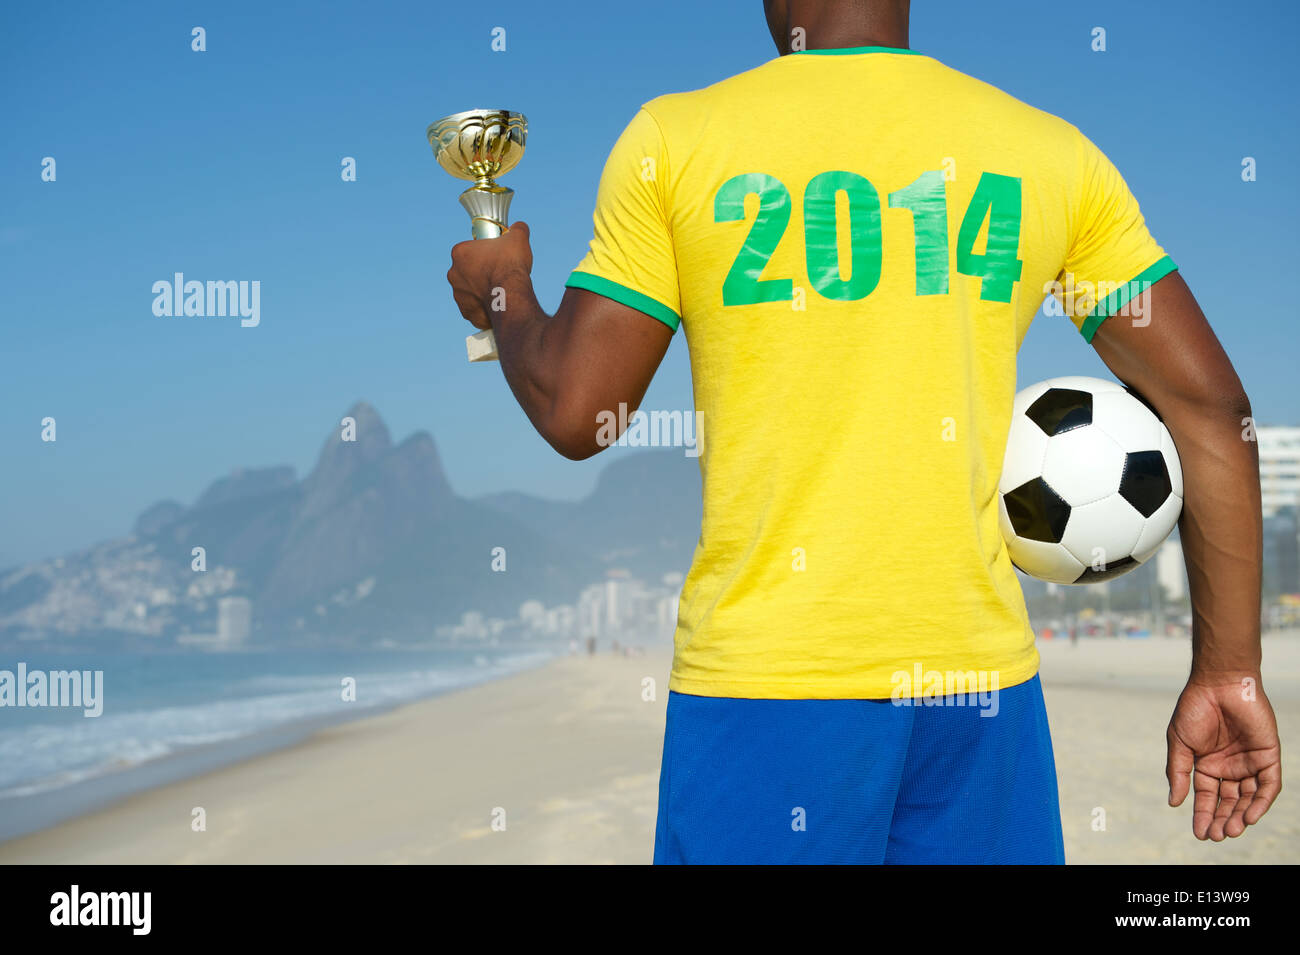 Champion Brazilian soccer player holding trophy et du football en 2014 shirt plage Ipanema Rio de Janeiro Brésil Banque D'Images